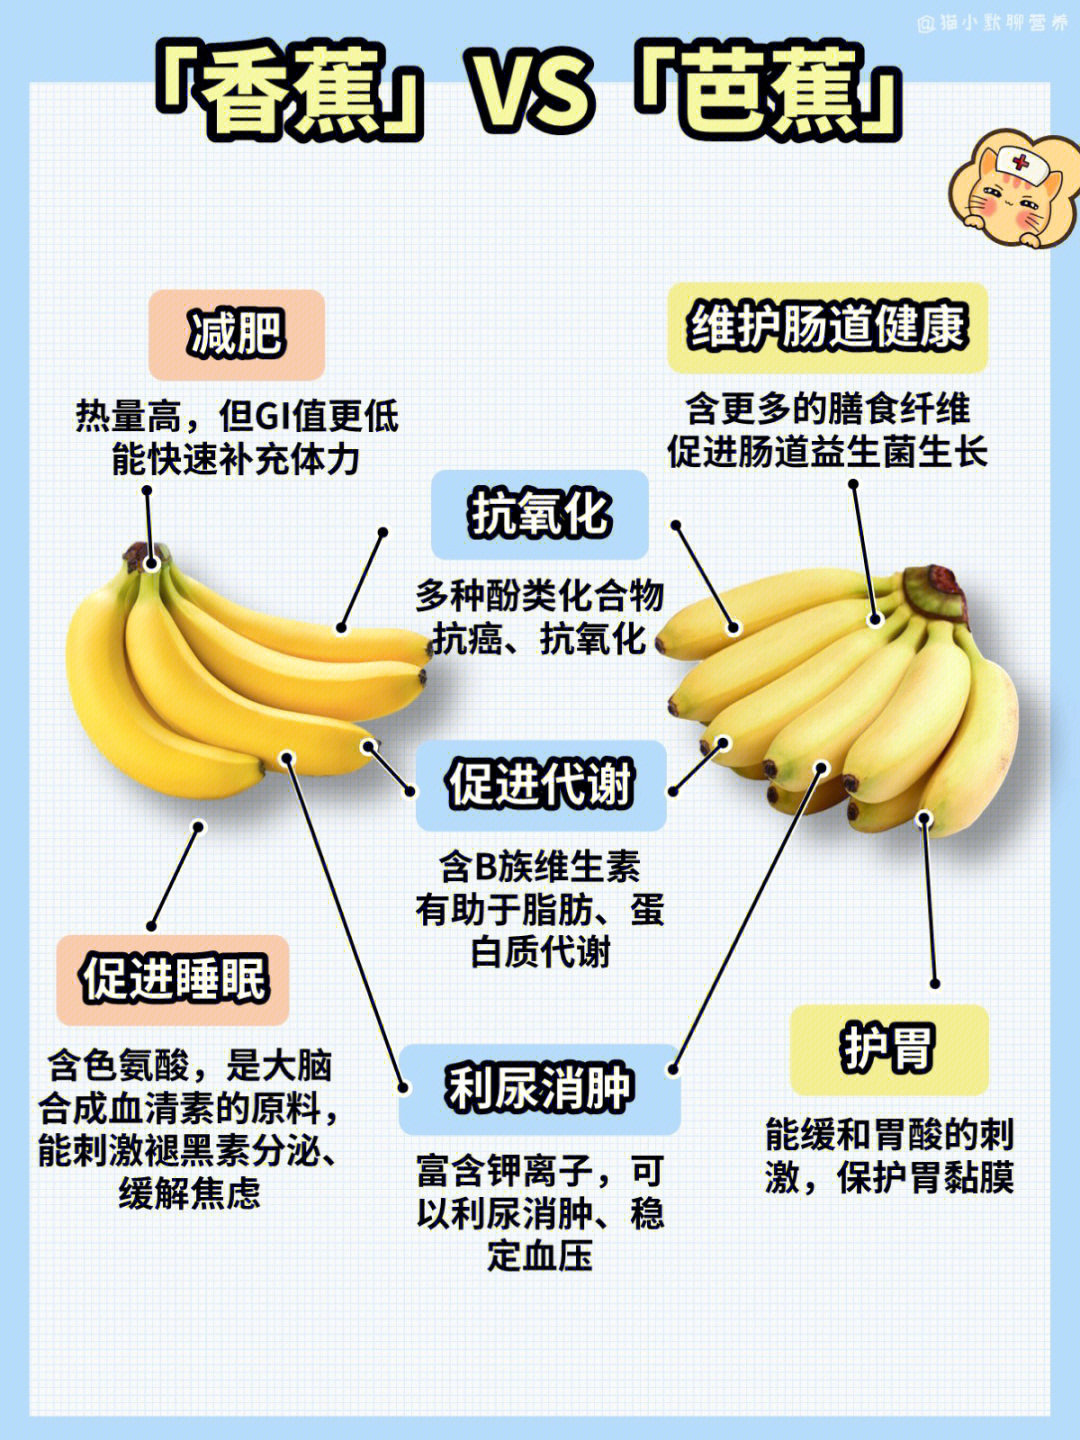 香蕉比芭蕉更加香甜软糯从营养价值上,两者成分相似,但略有不同[种草r